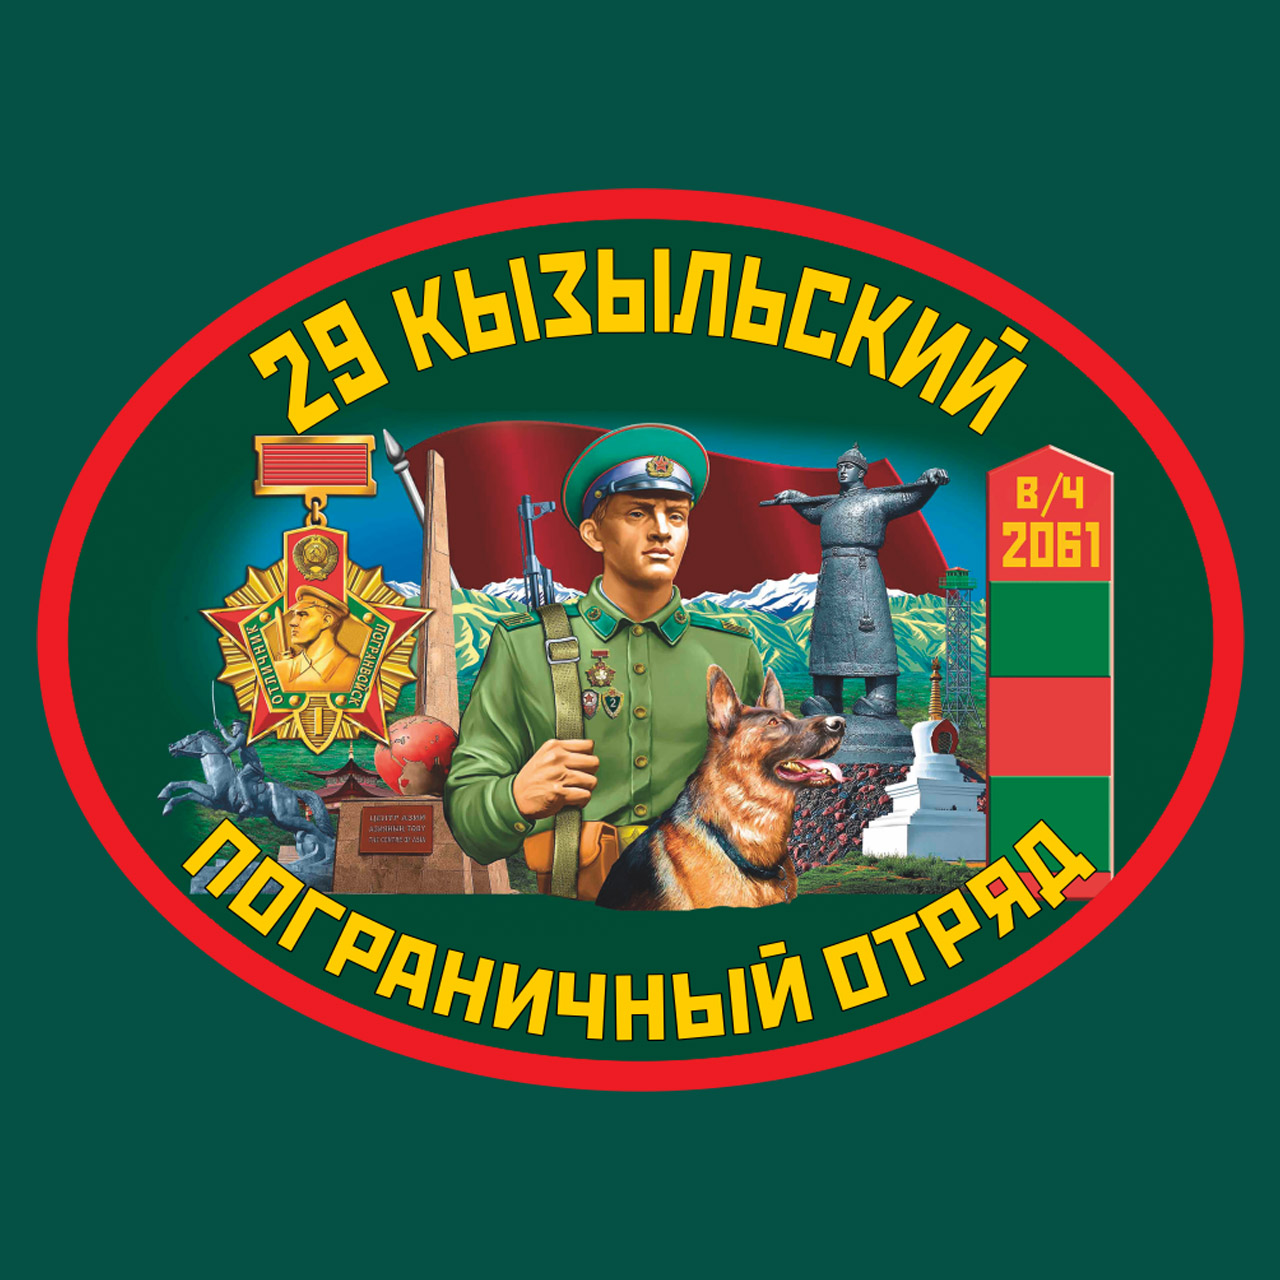 Заказать недорого термотрансфер 29-й Кызыльский пограничный отряд